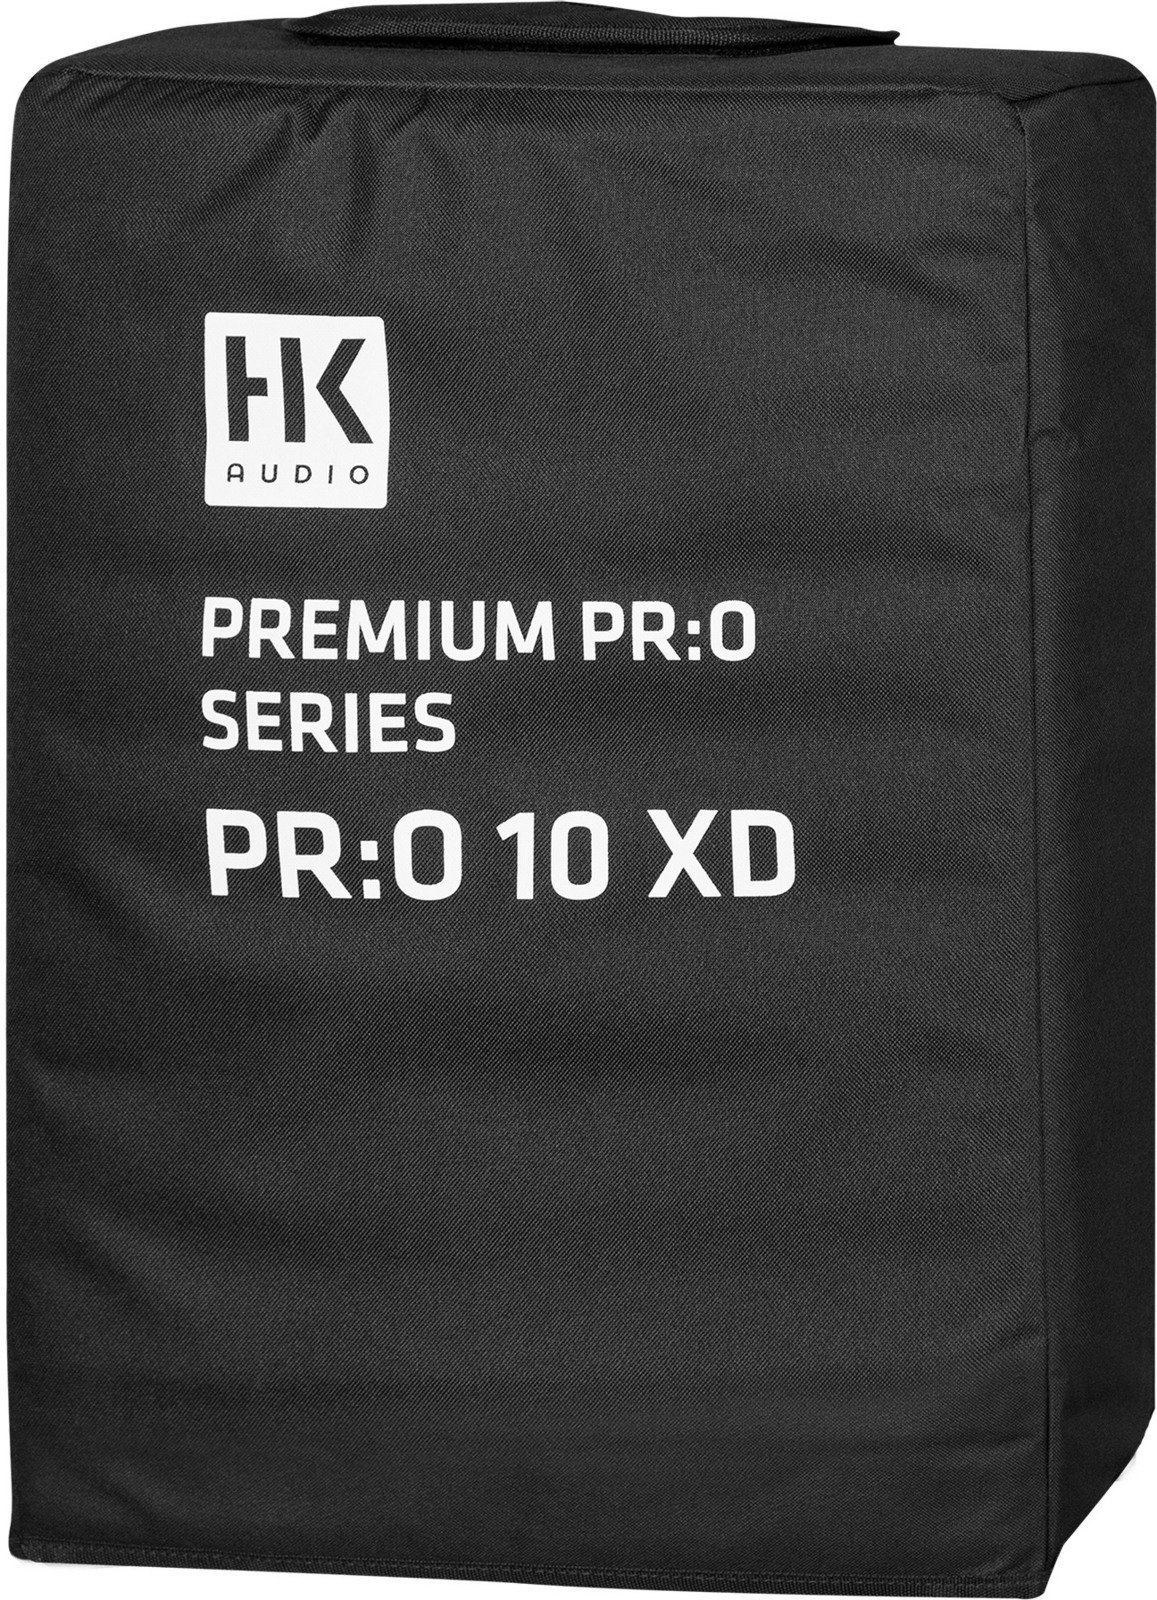 Tas voor luidsprekers HK Audio PR:O 10 XD Cover